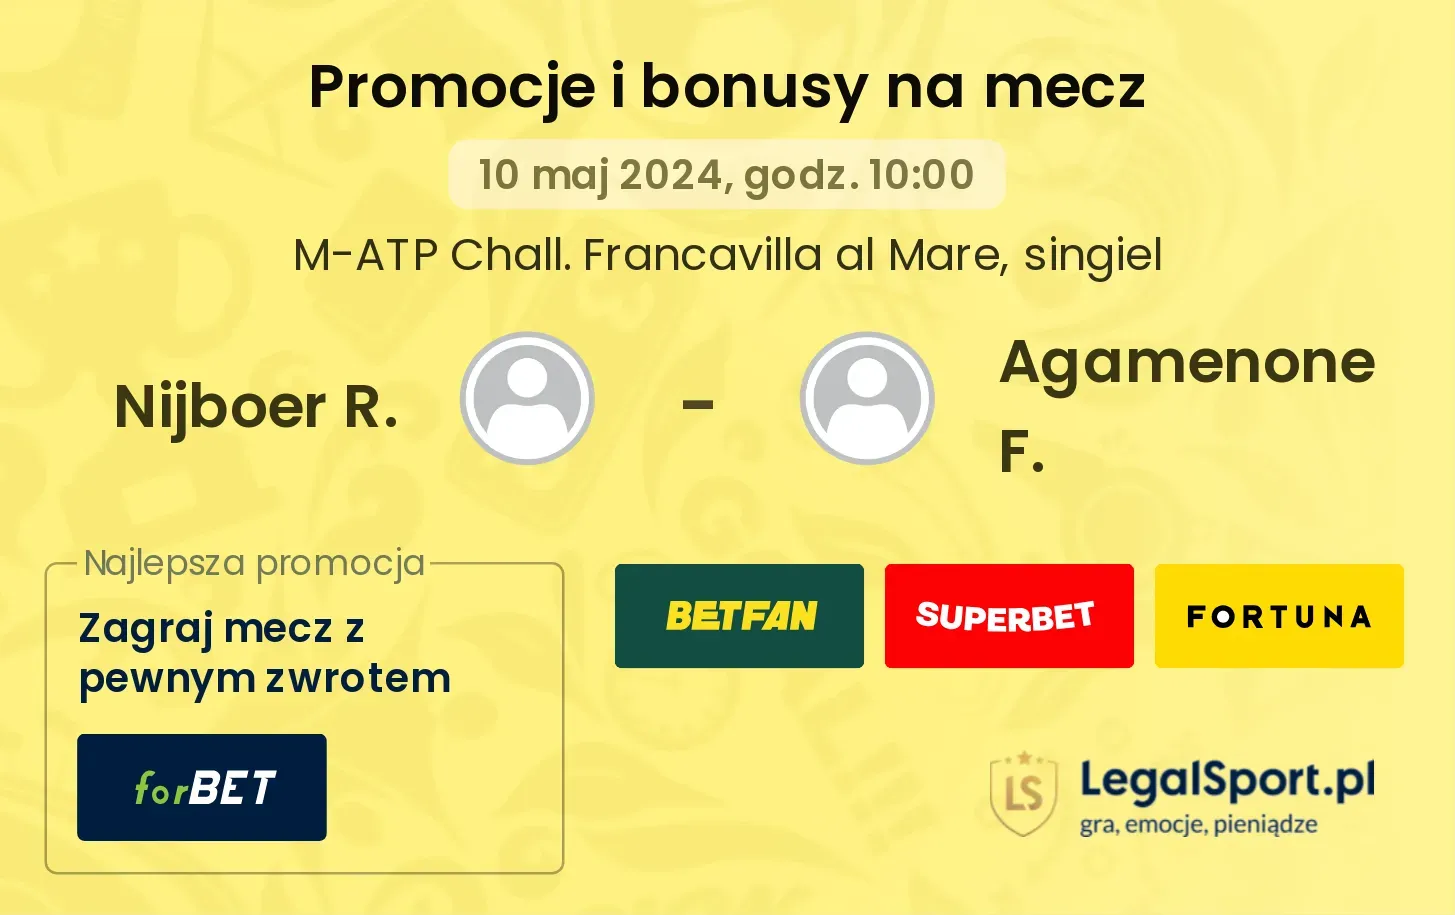 Nijboer R. - Agamenone F. promocje bonusy na mecz